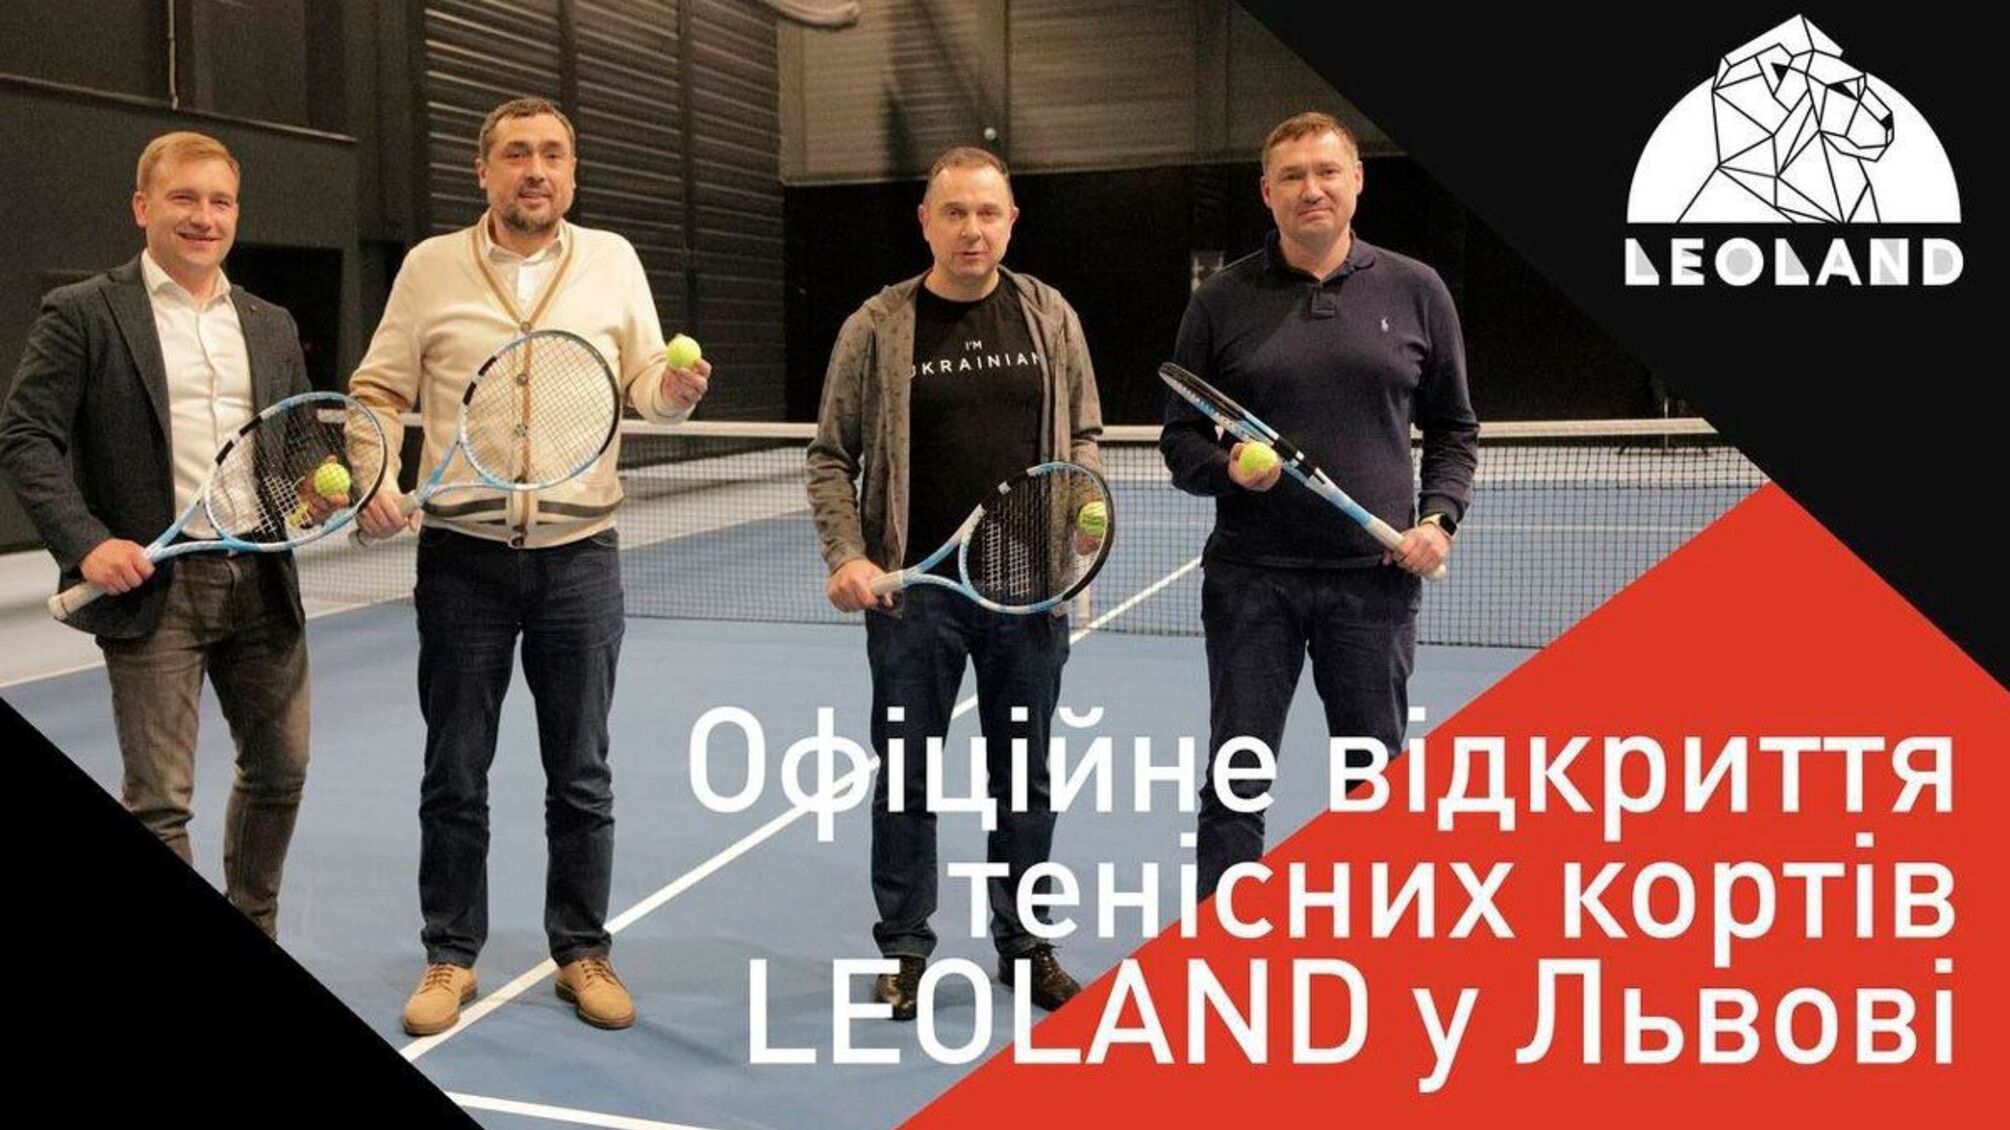 Александр Свищев открыл во Львове новые теннисные корты 'Leoland': подробности